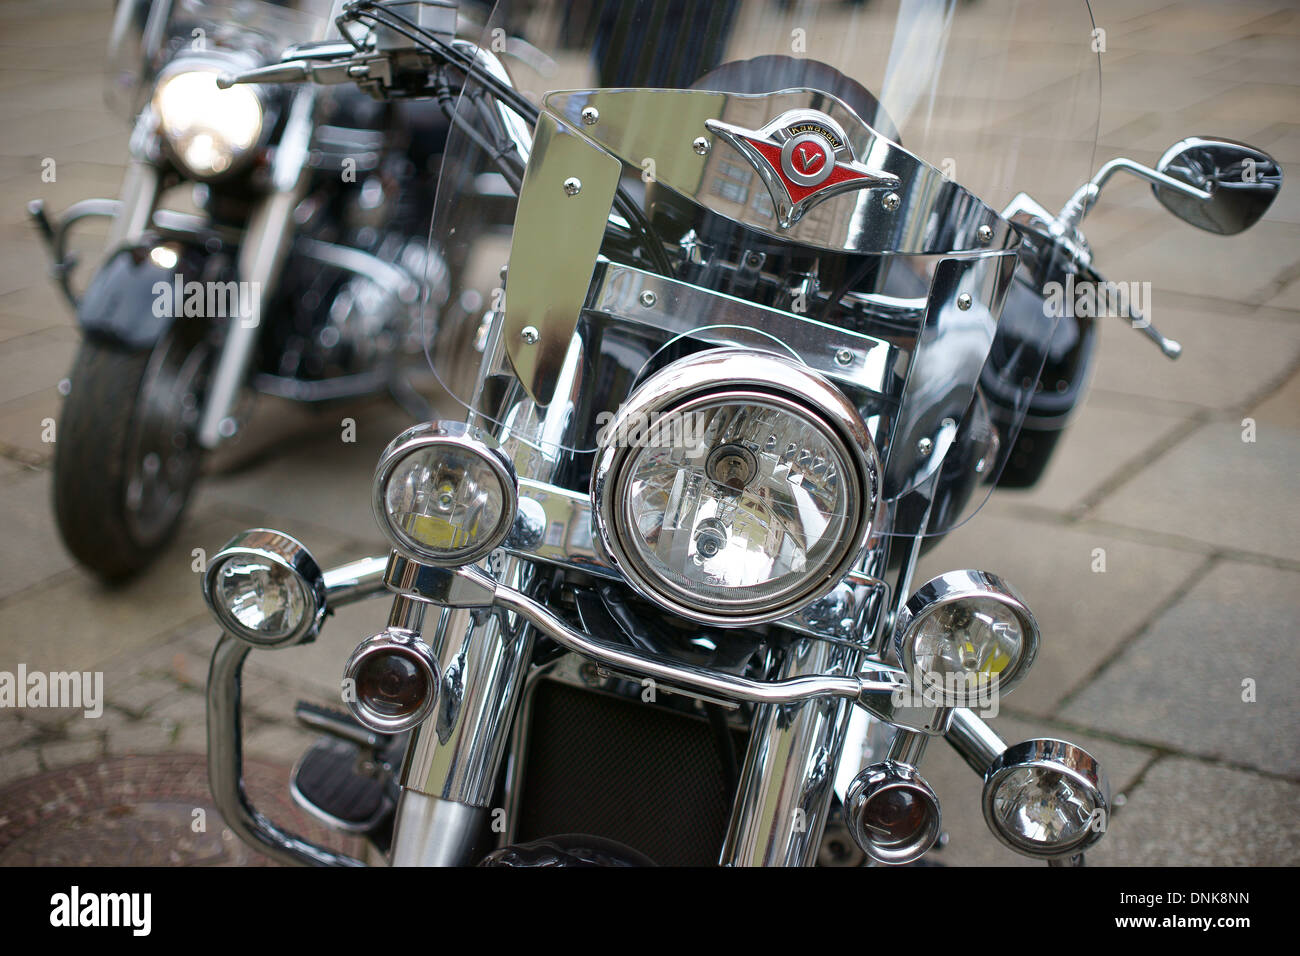 Kawasaki-Motorrad-Motorrad Stockfoto